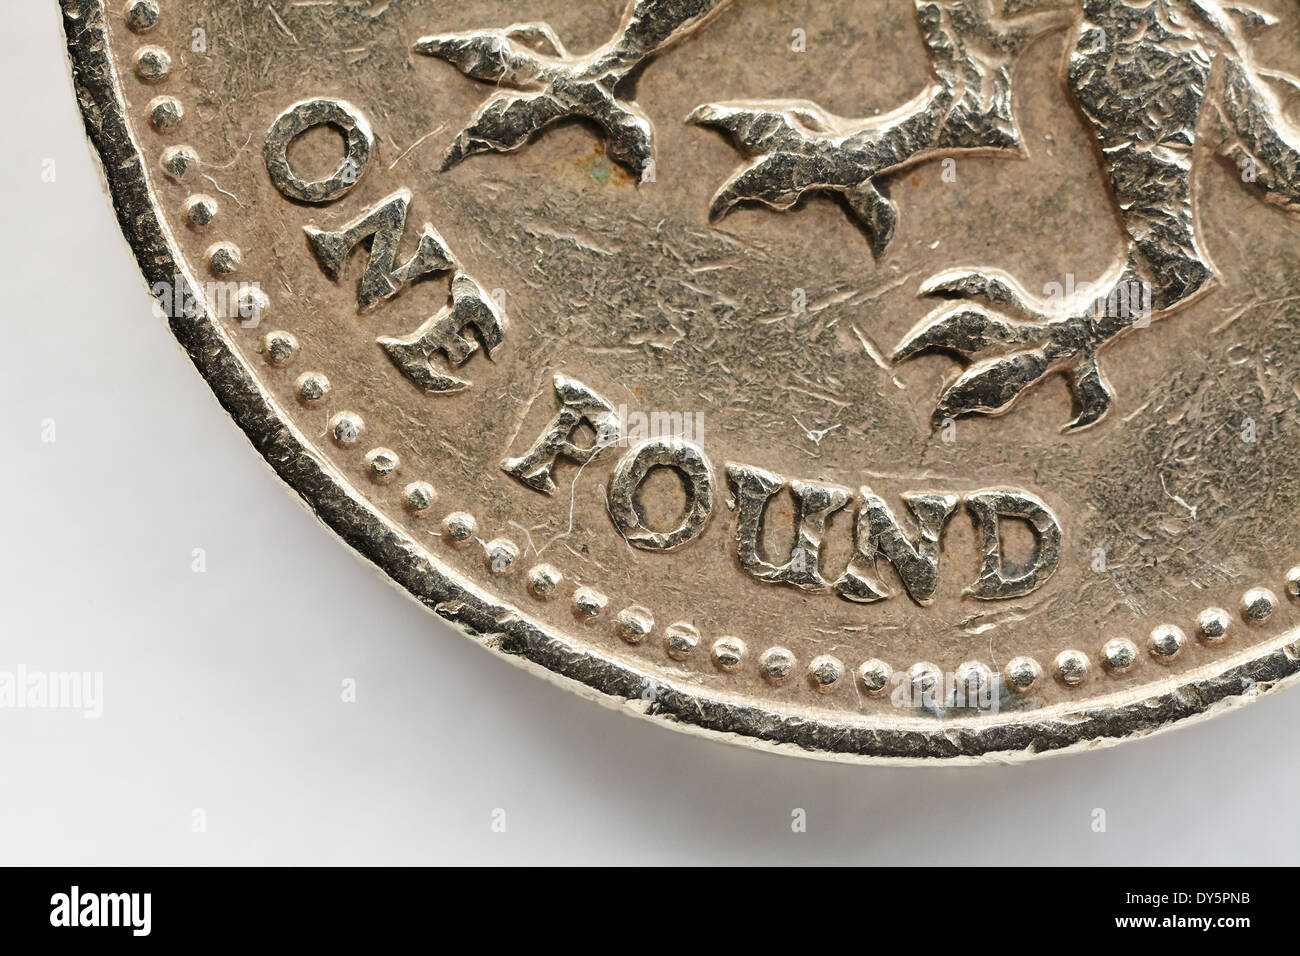 Pound coin, closeup detail. Stock Photo